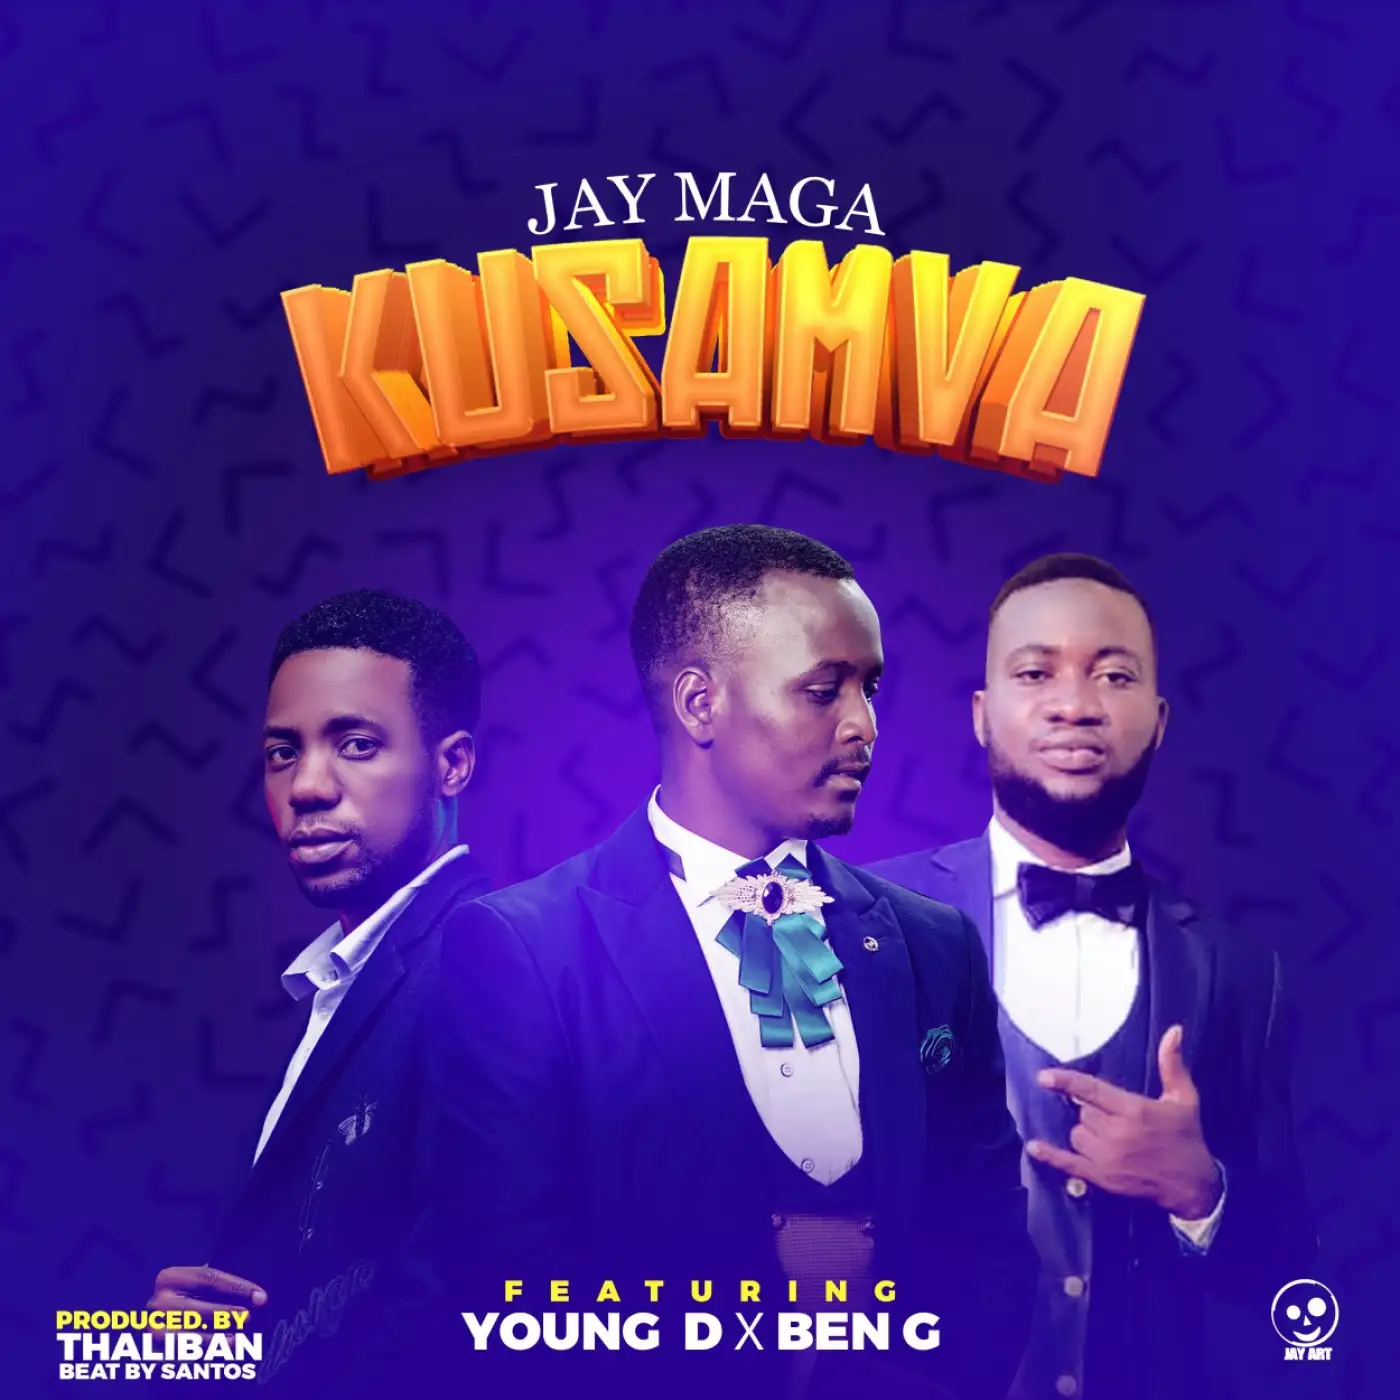 Jay Maga-Jay Maga - Kusamva ft Young D and Ben G-song artwork cover